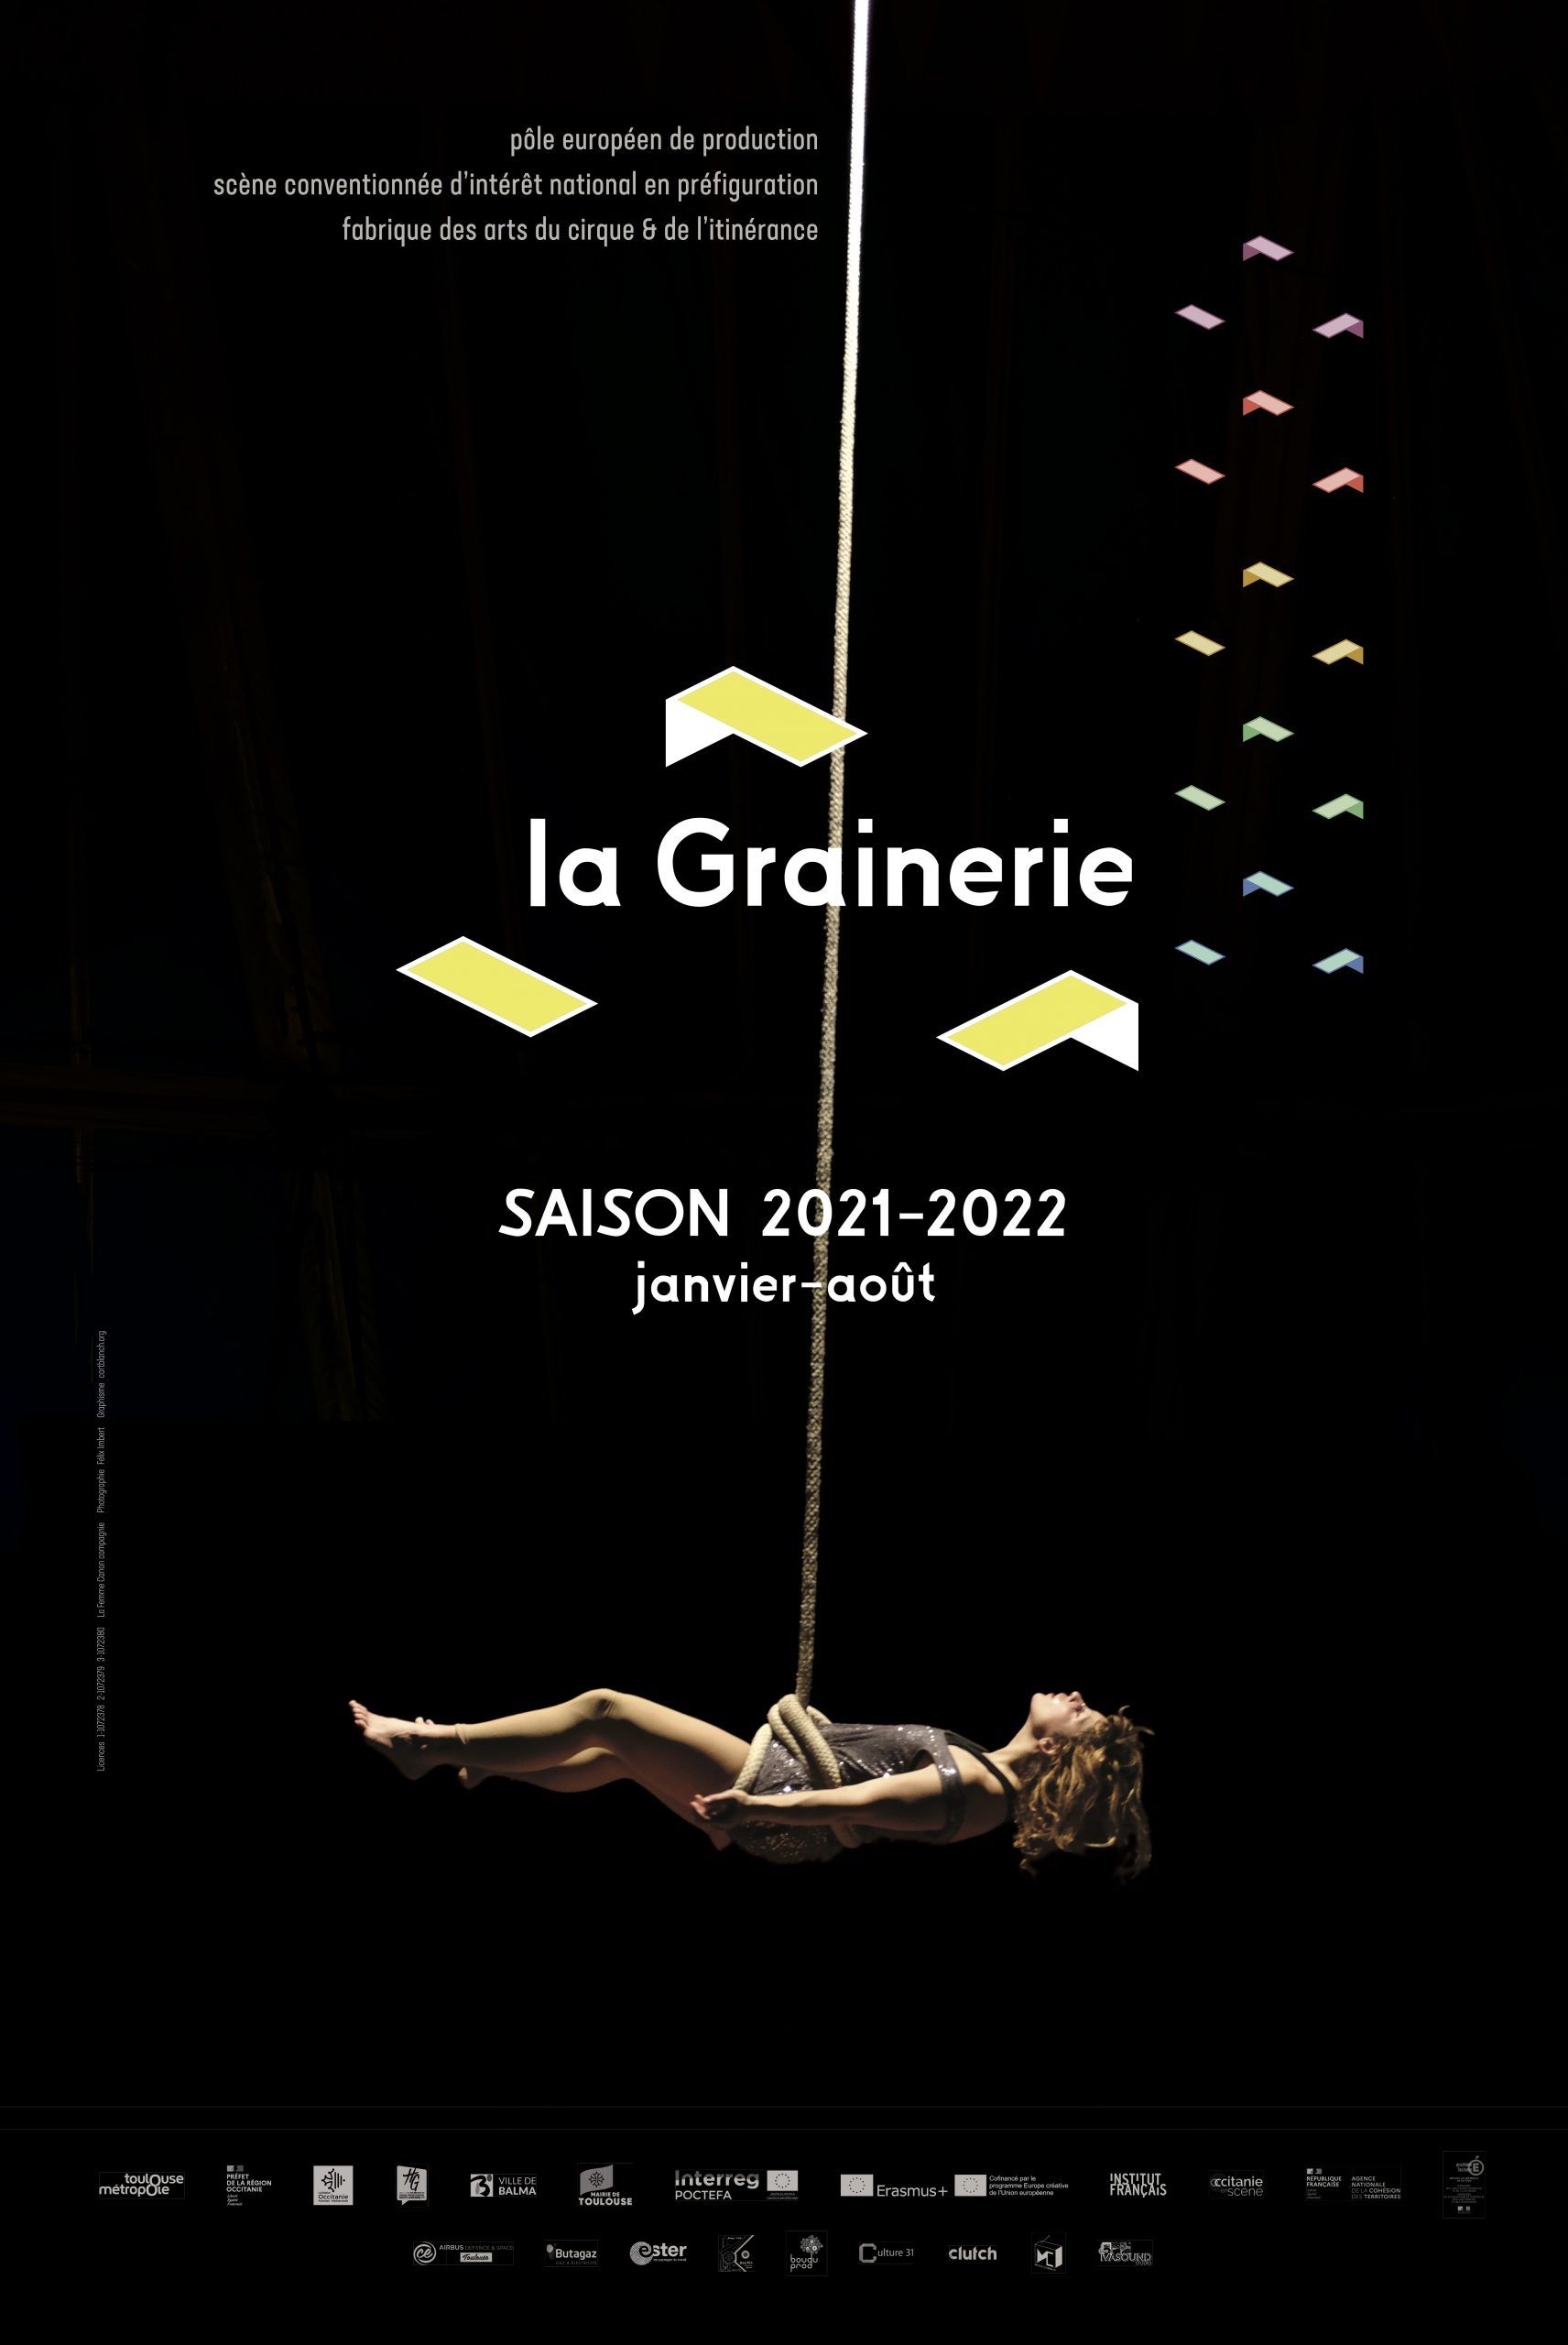 La Grainerie - Saison 2021/2022